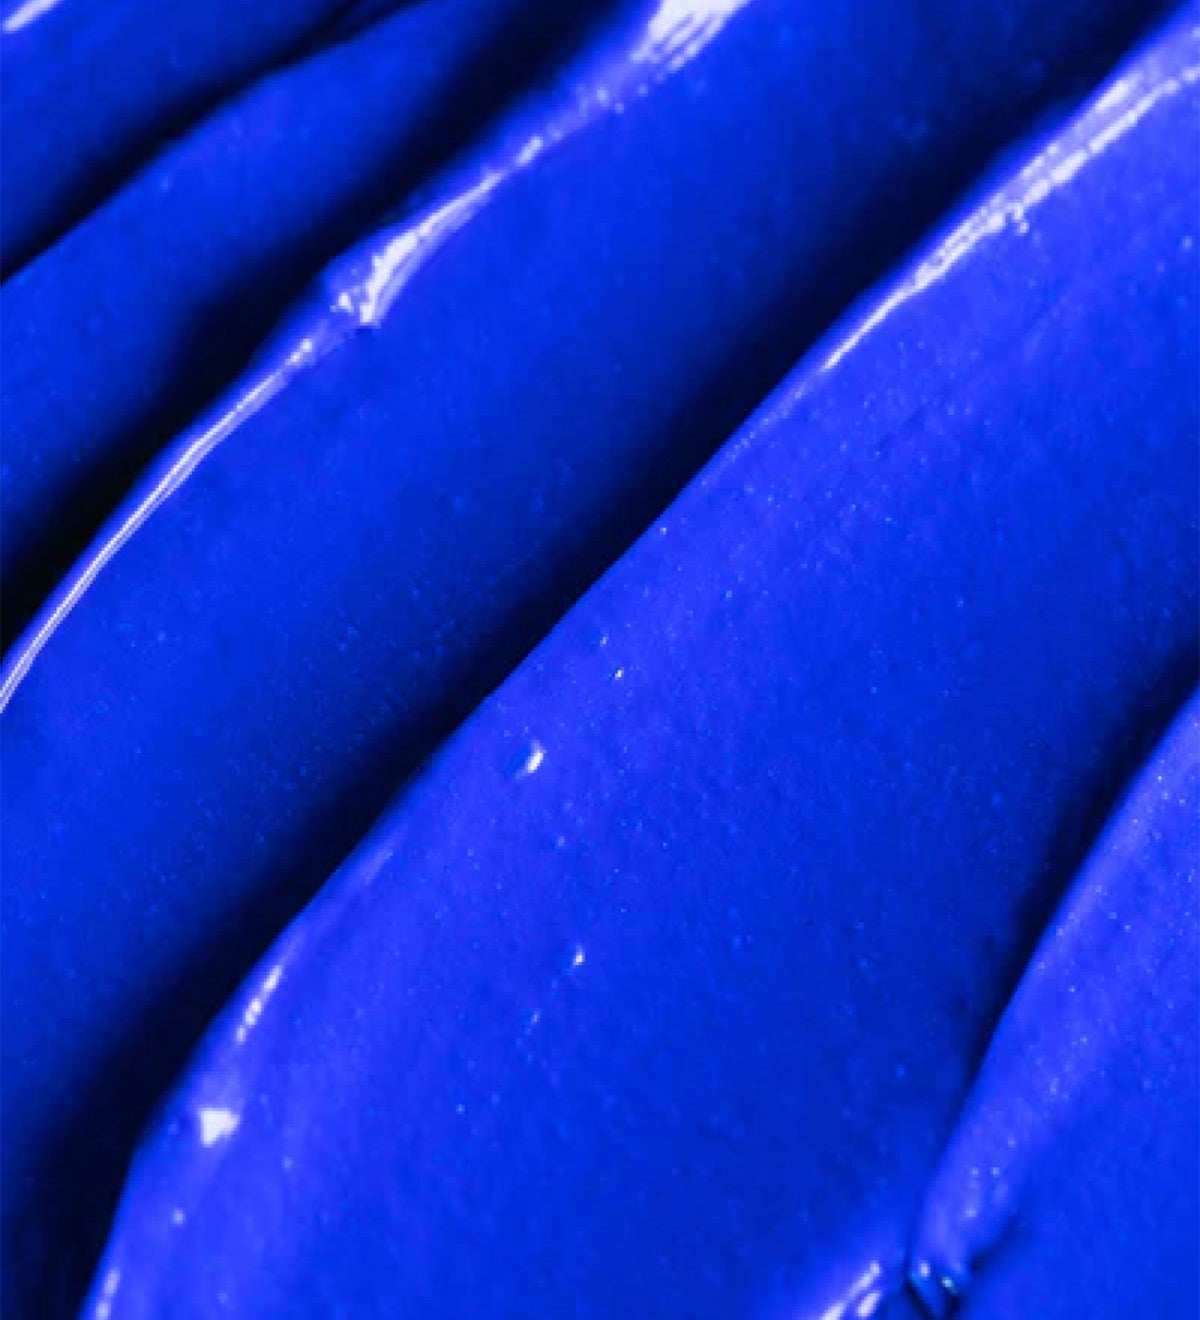 Closeup of XMONDO Color Super Blue hair healing color